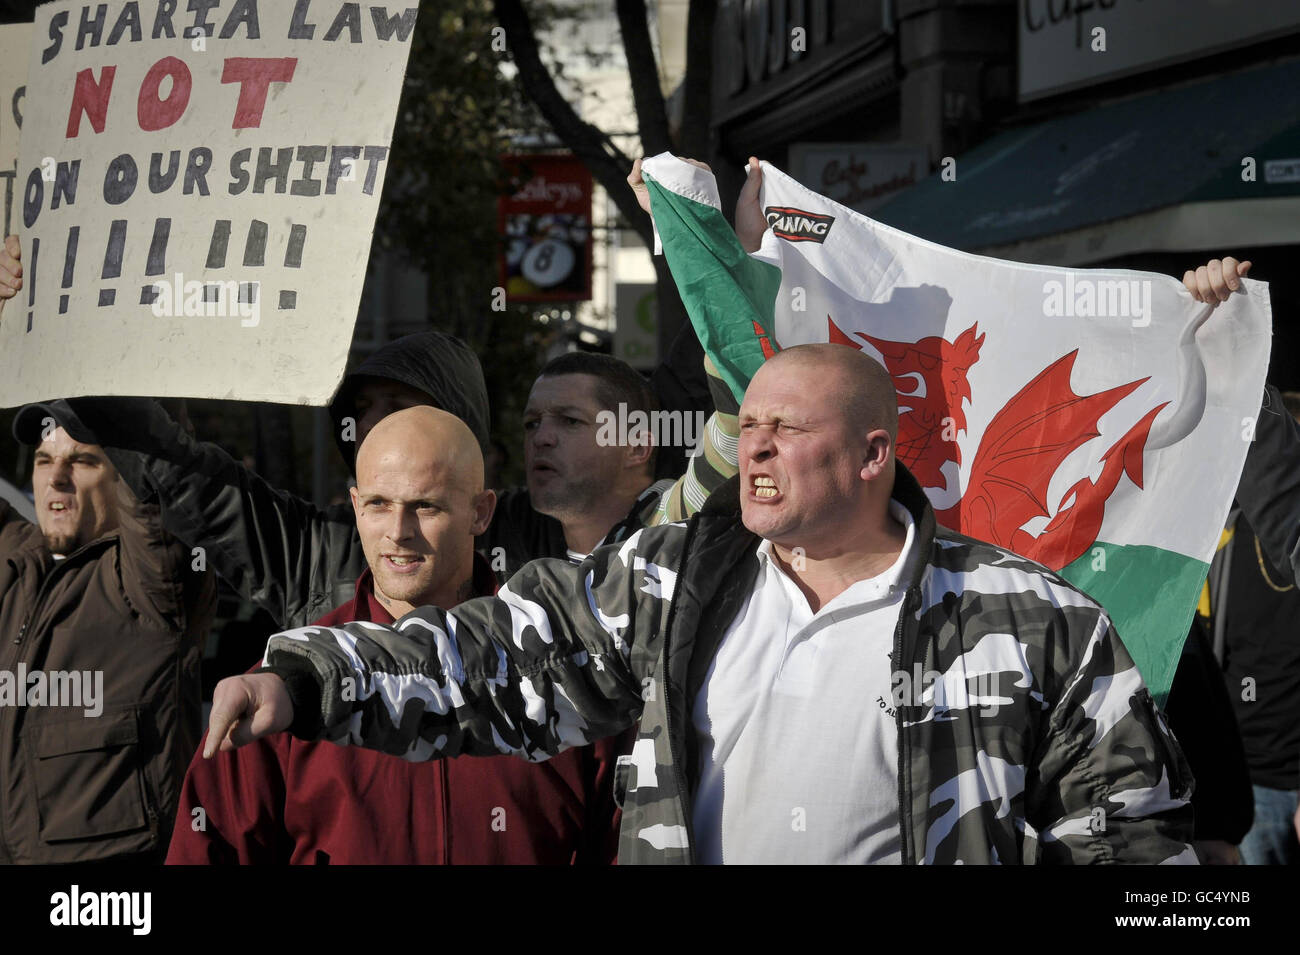 Demonstranten der Walisischen Verteidigungsliga rufen die Anti-Faschismus-Demonstranten zurück, während die beiden Gruppen während eines Protestes in der Nähe des Castle Square in Swansea, Wales, von der Polizei getrennt werden. Stockfoto